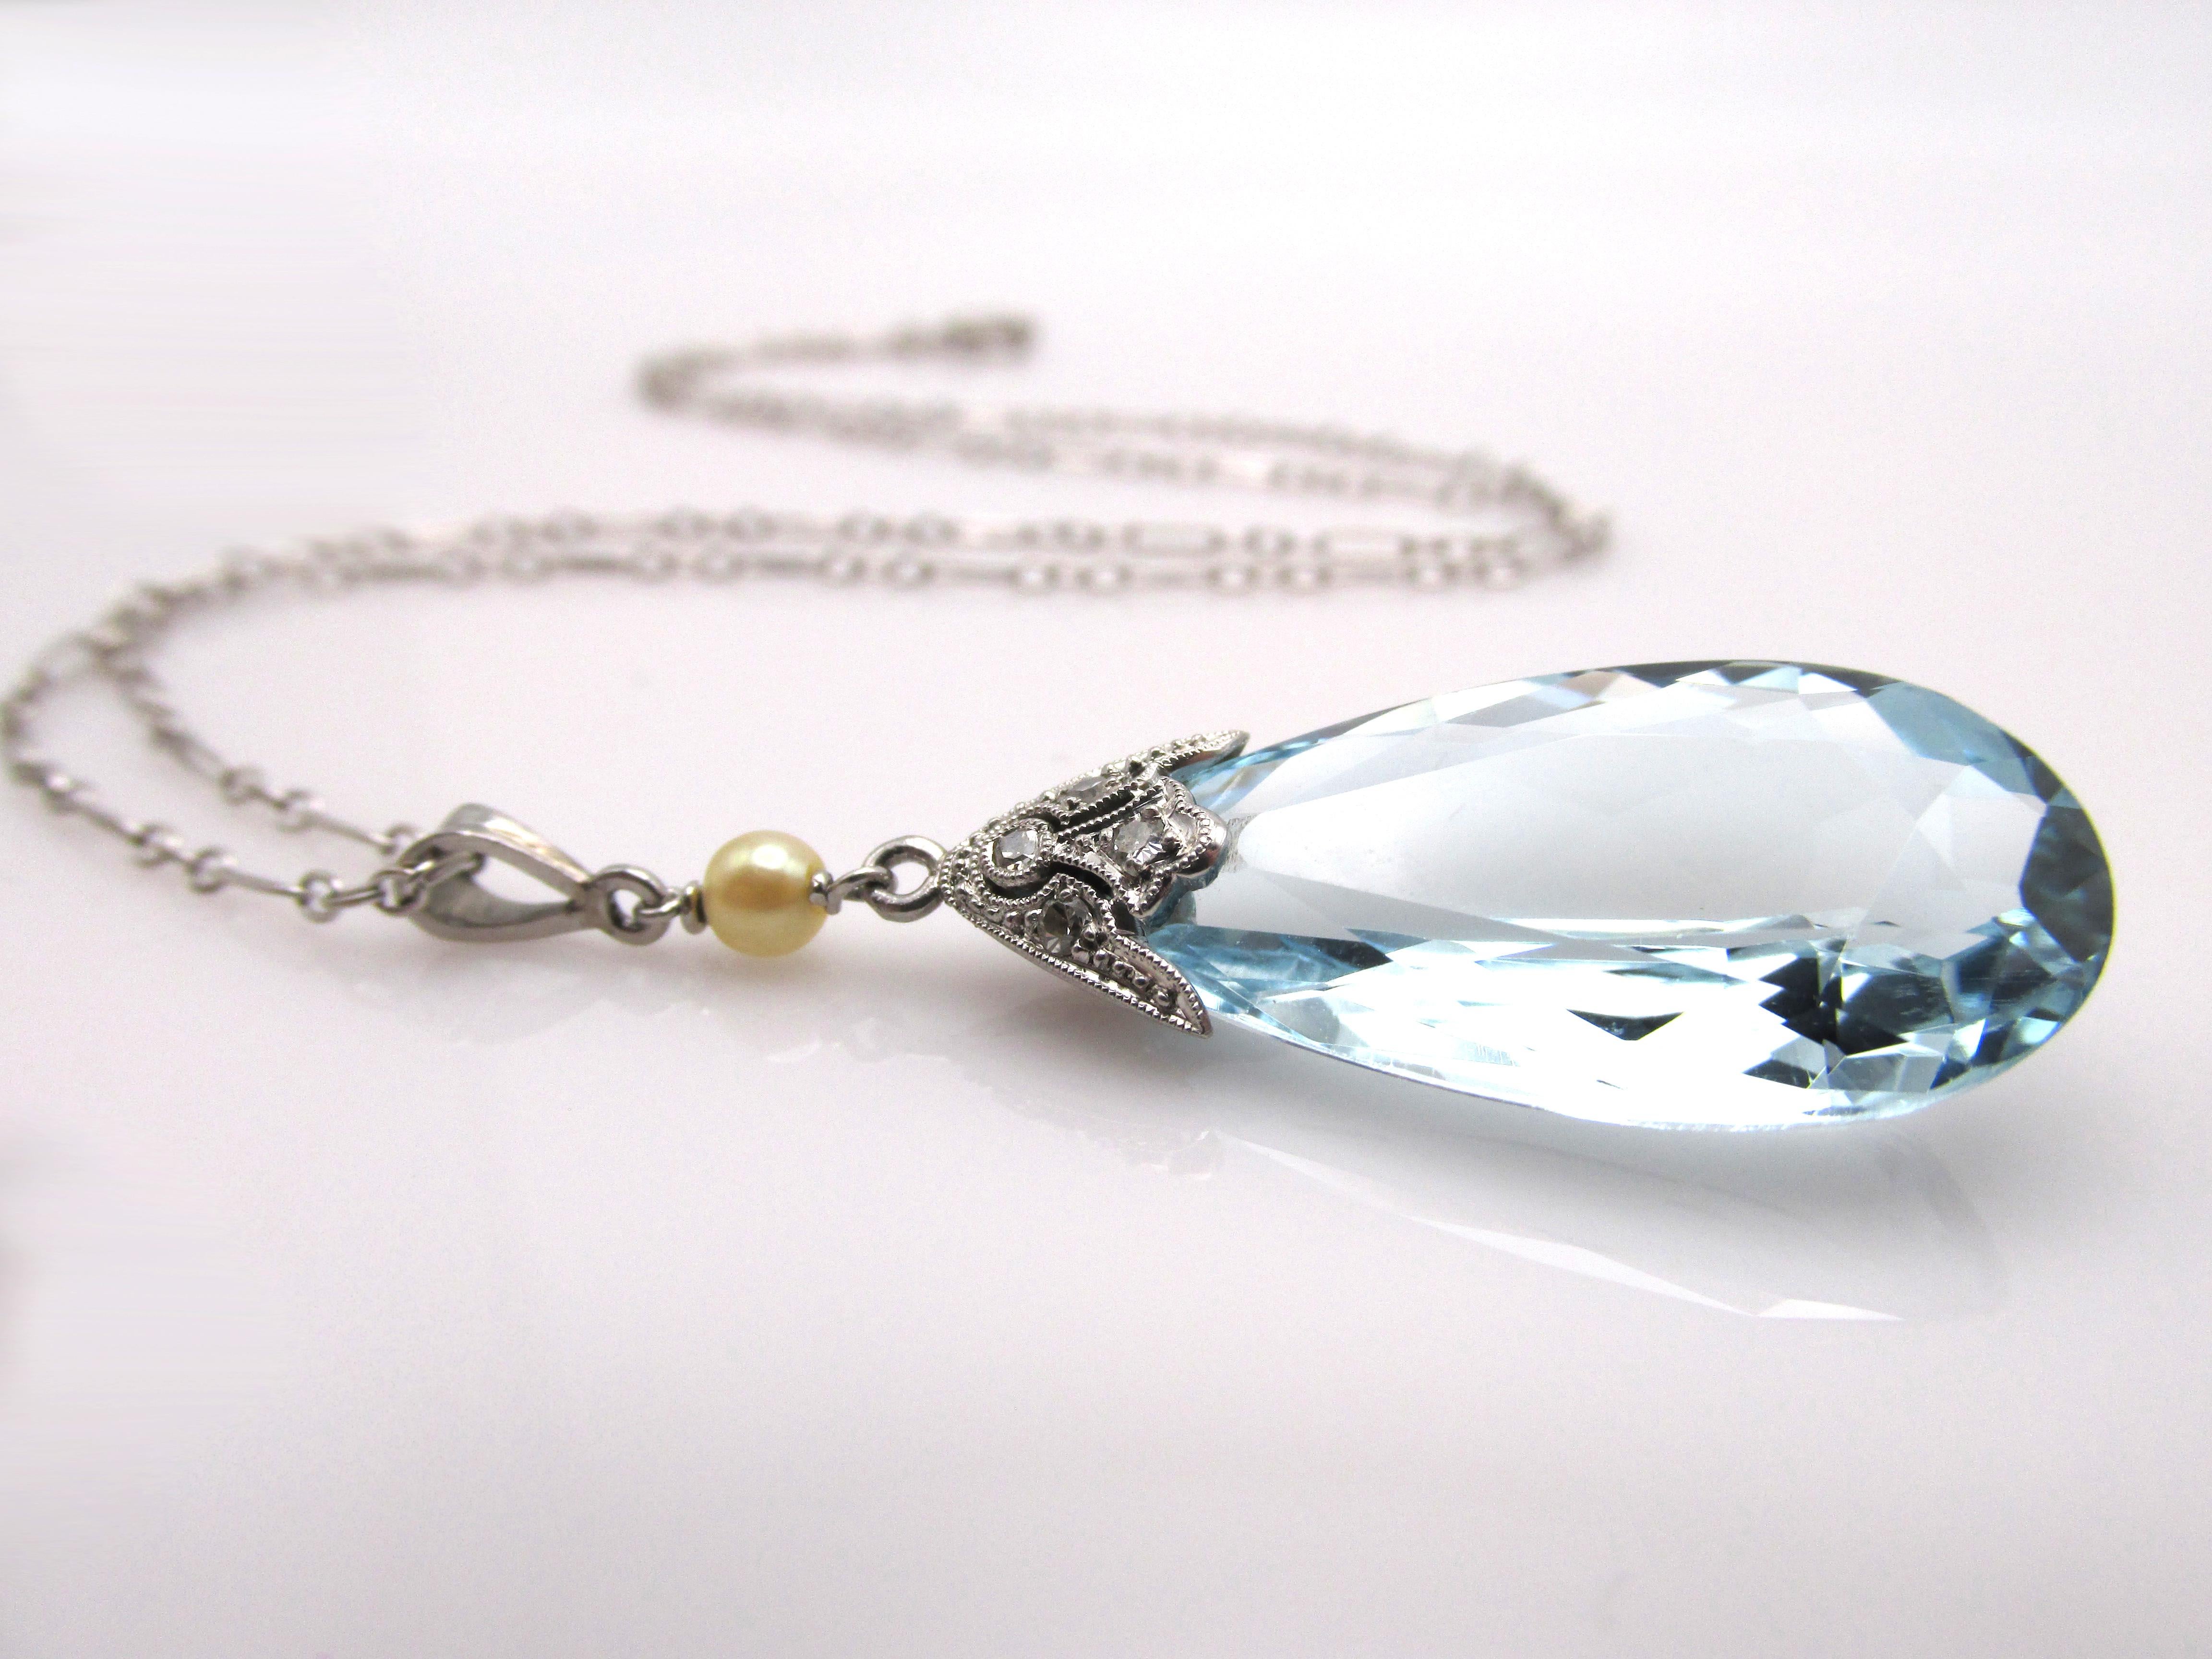 antique aquamarine pendant